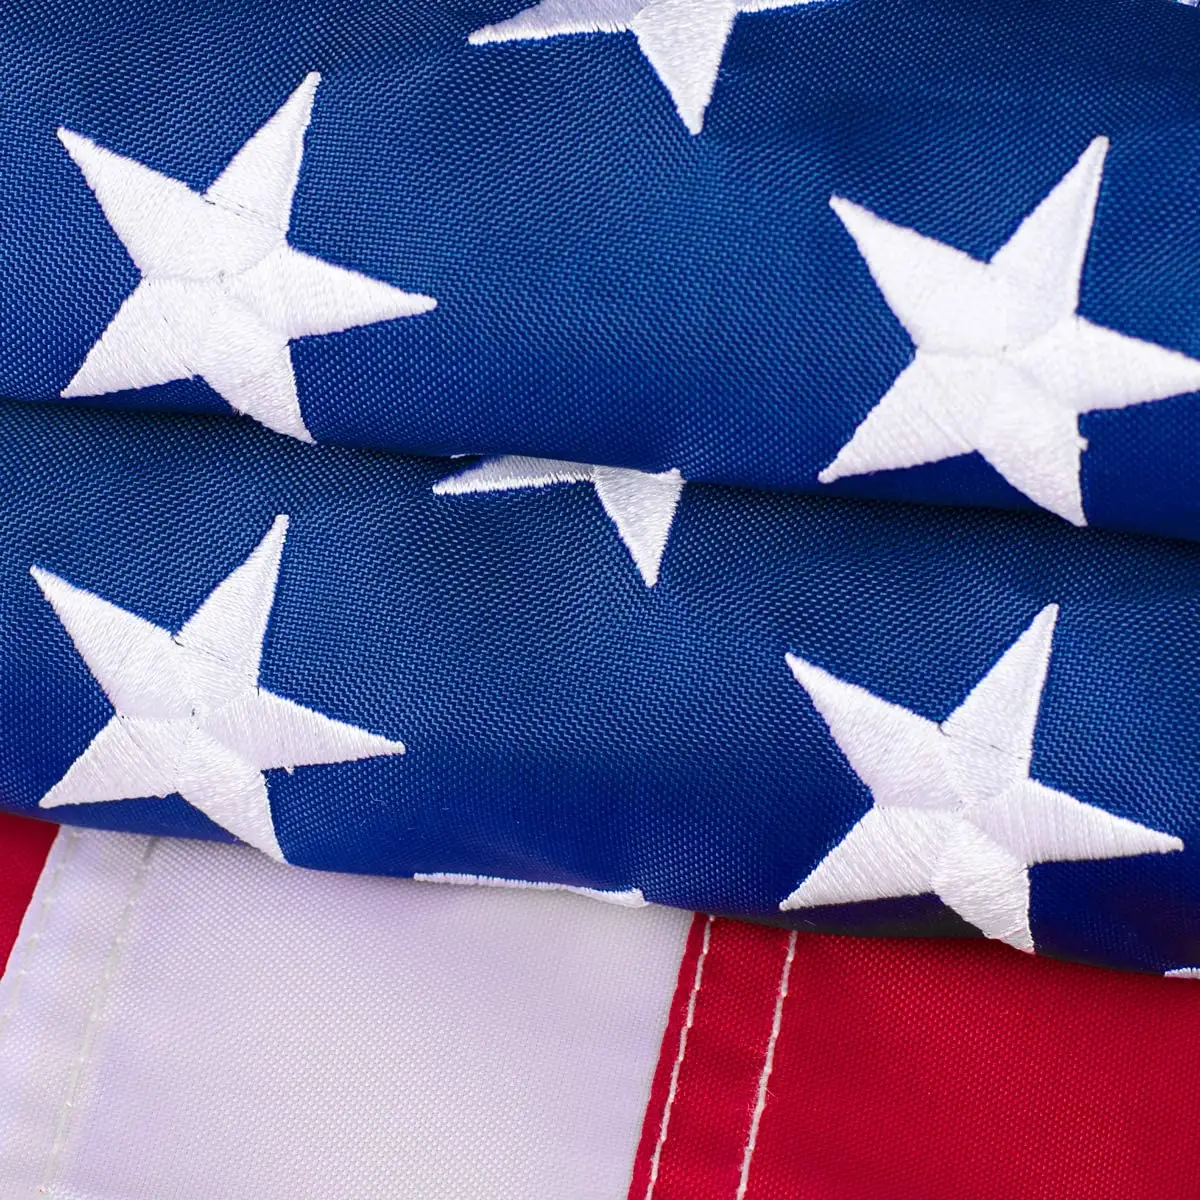 Bandiere americane 3x5 per fuori USA bandiera americana Deluxe stelle ricamate bandiere resistenti colore vivido strisce cucite occhielli in ottone